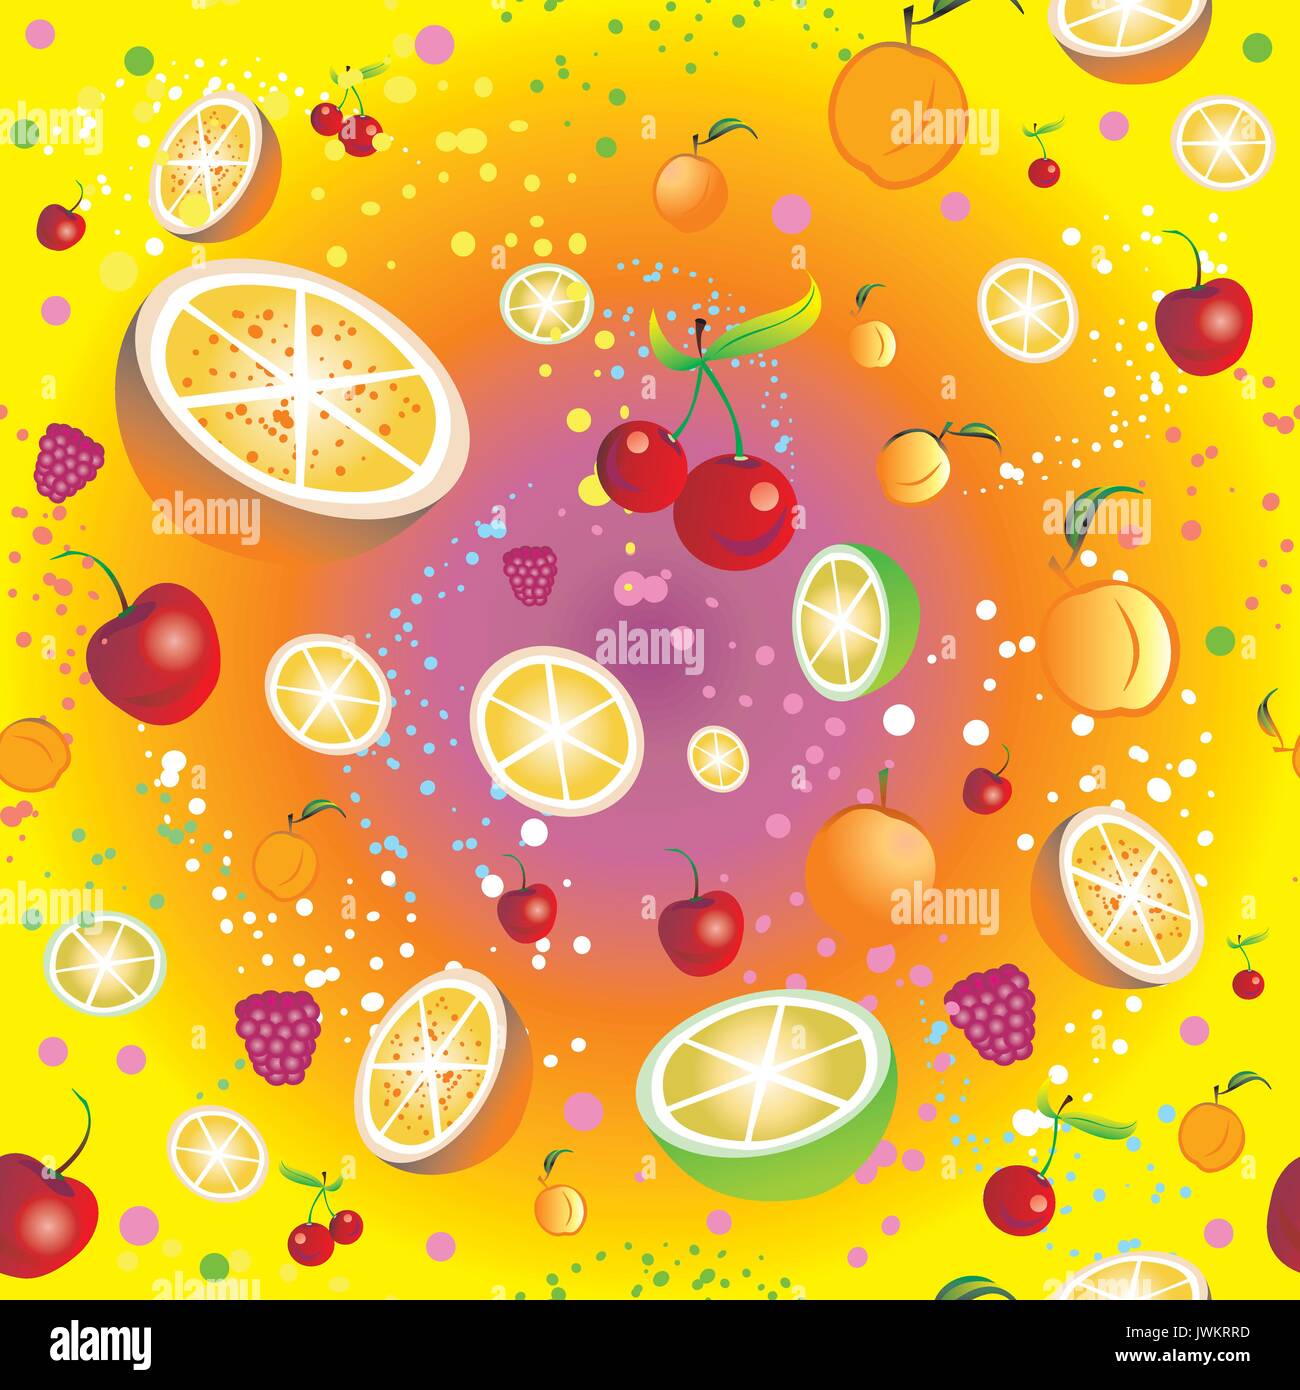 Modèle transparent avec des fruits et des petits fruits (cerise, orange, citron vert, abricot, framboise) sur fond coloré Illustration de Vecteur